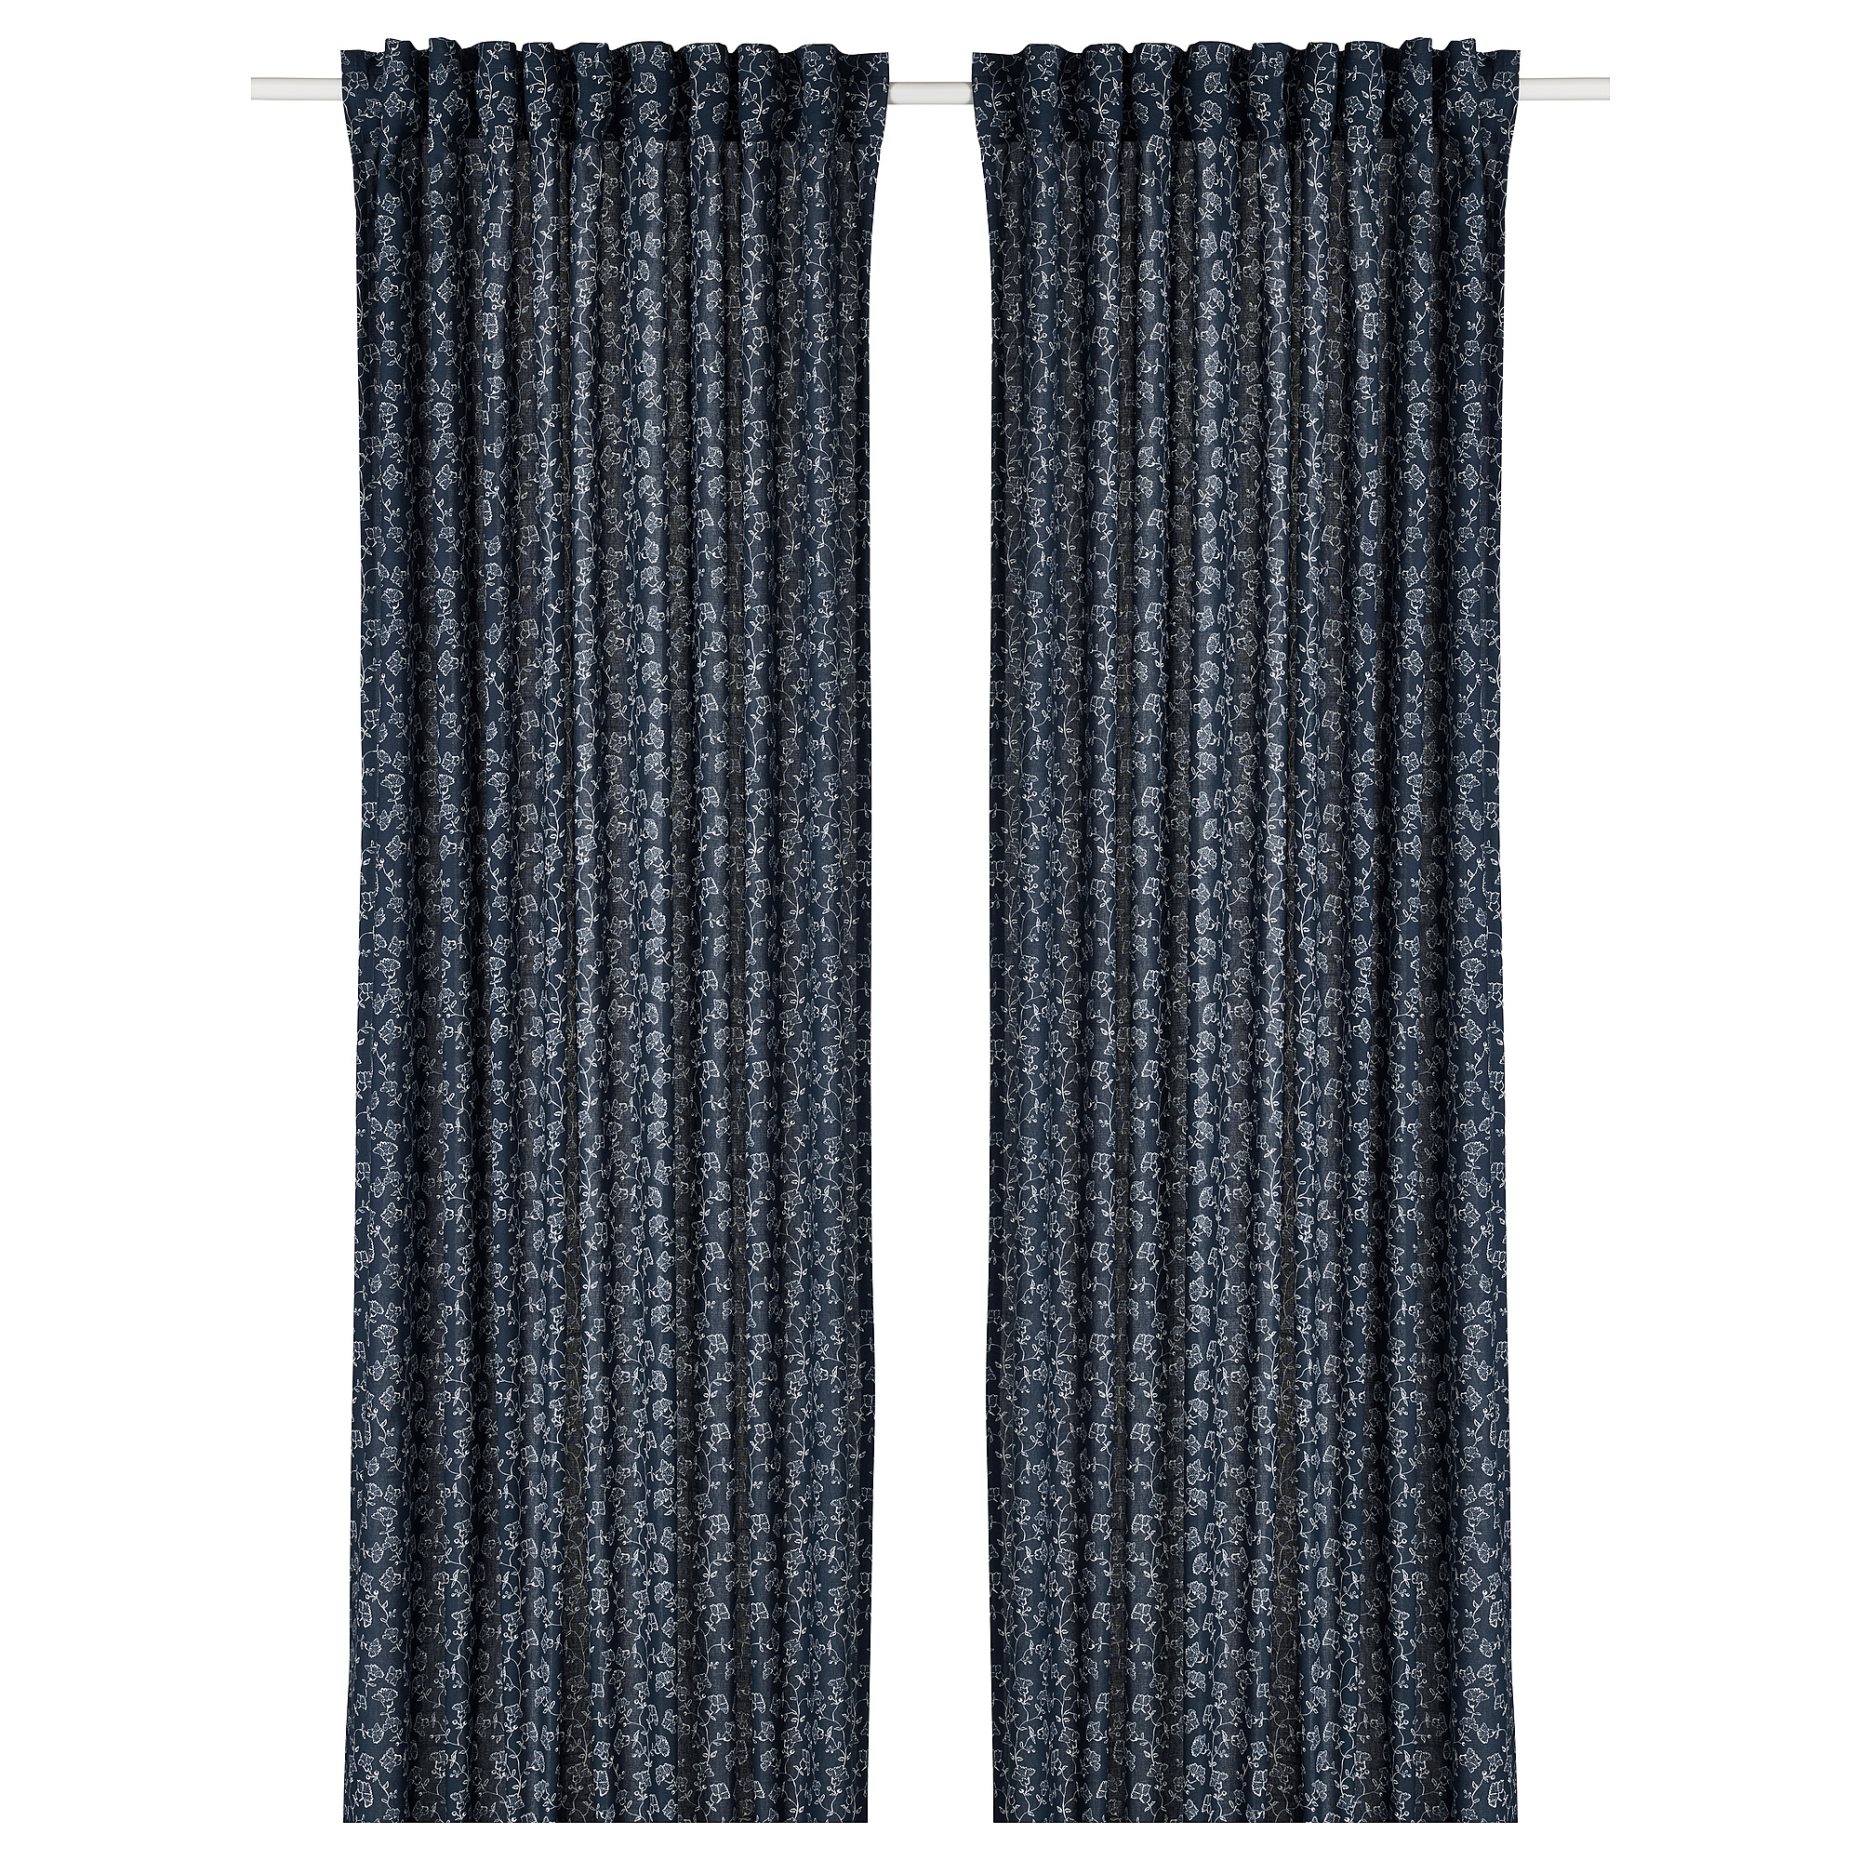 TRYSTÄVMAL, curtains 1 pair, 145x300 cm, 605.565.05